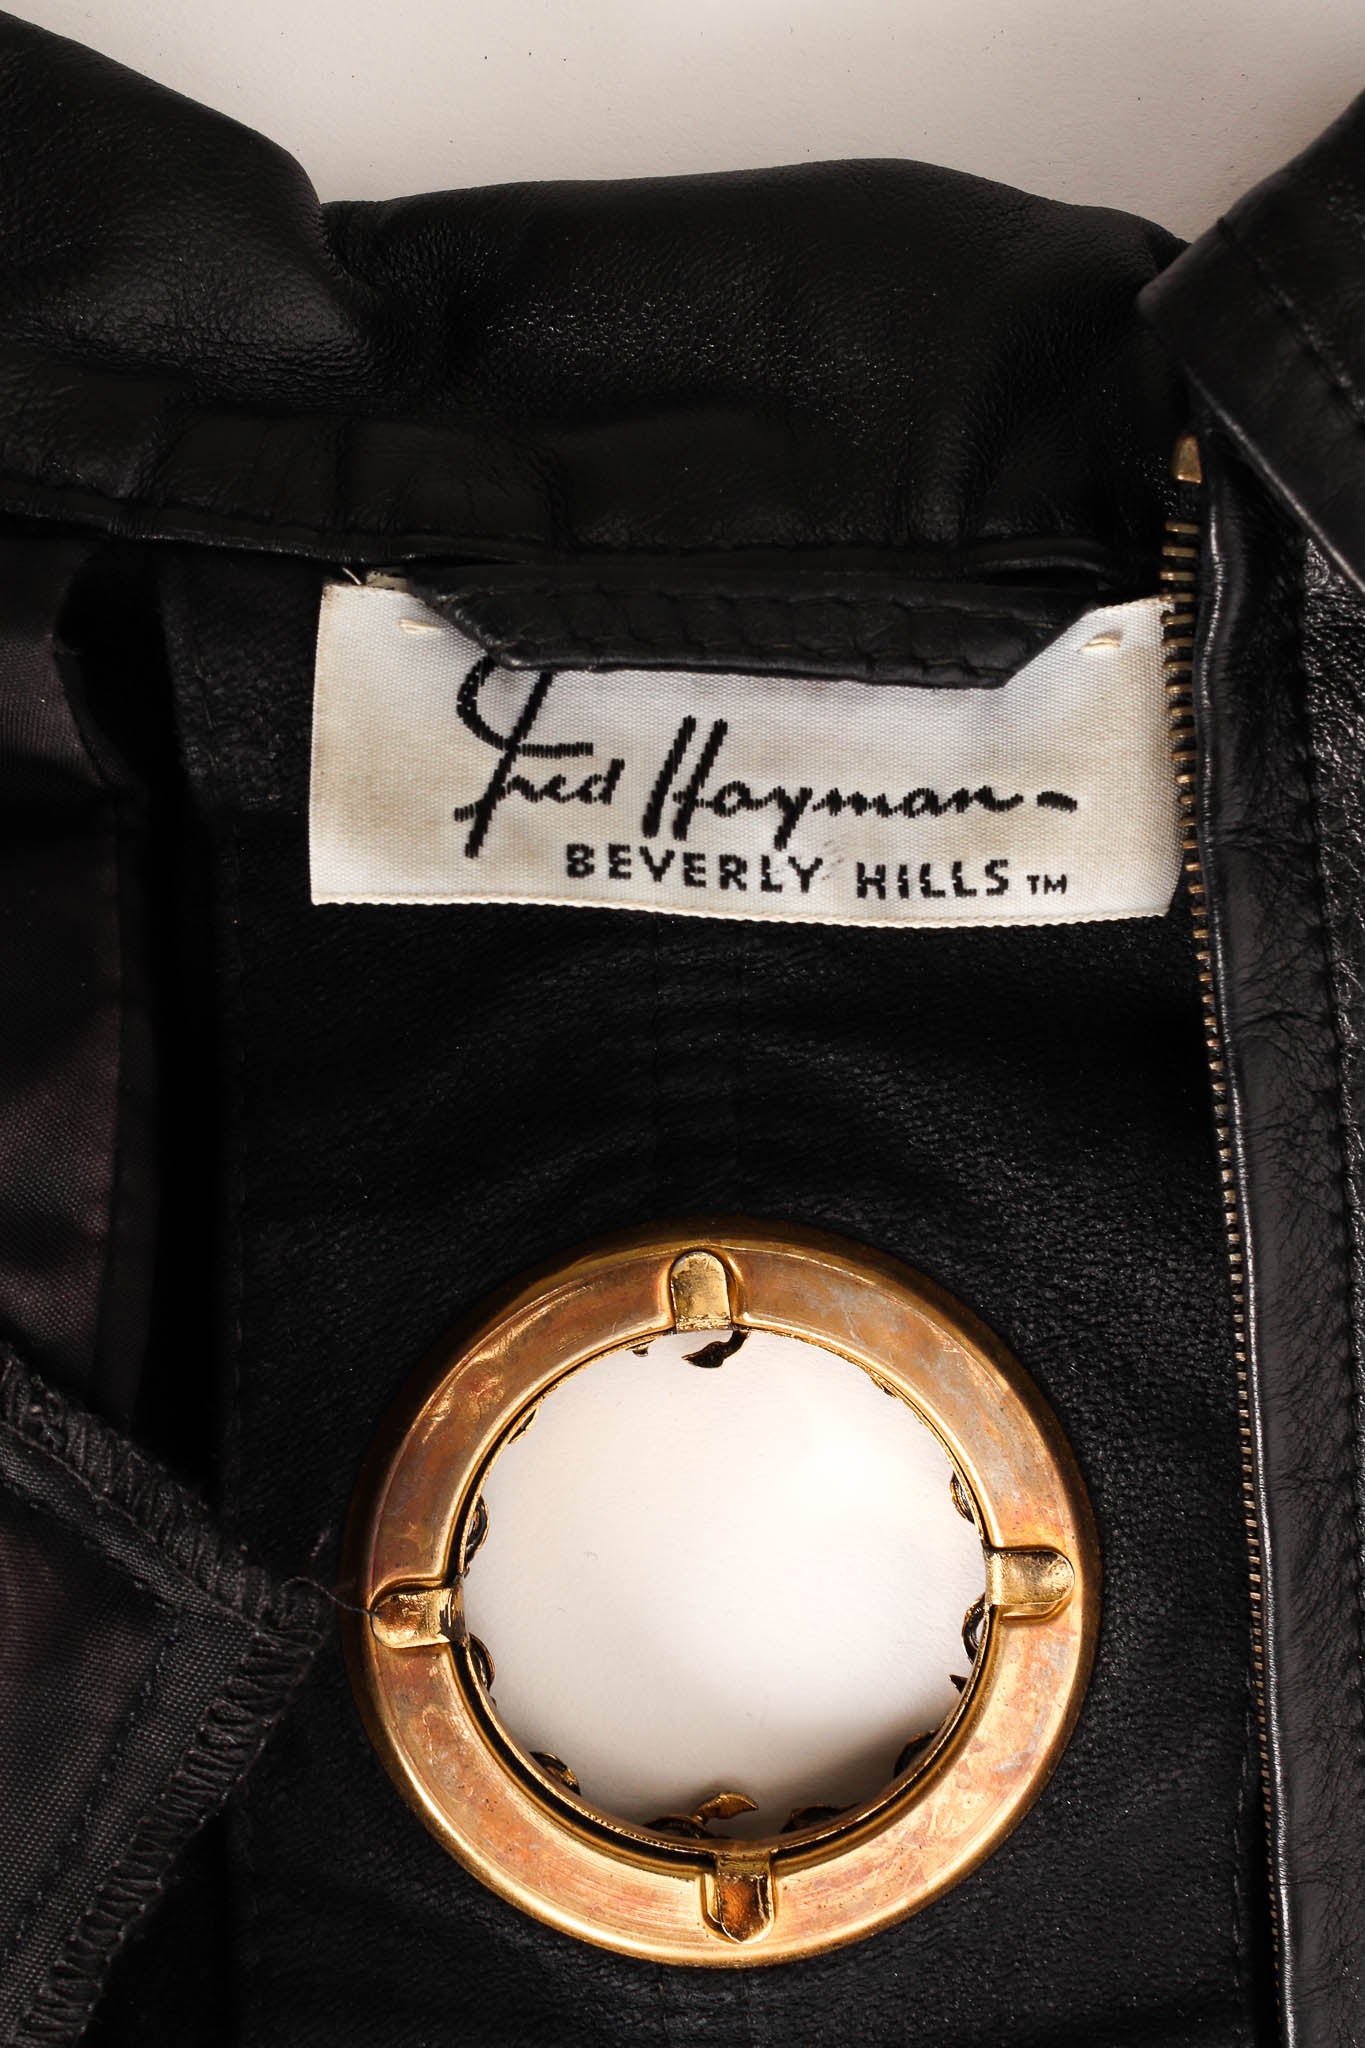 Vintage Gianfranco Ferre Eyelet Leather Top & Skirt Set label @ Recess LA